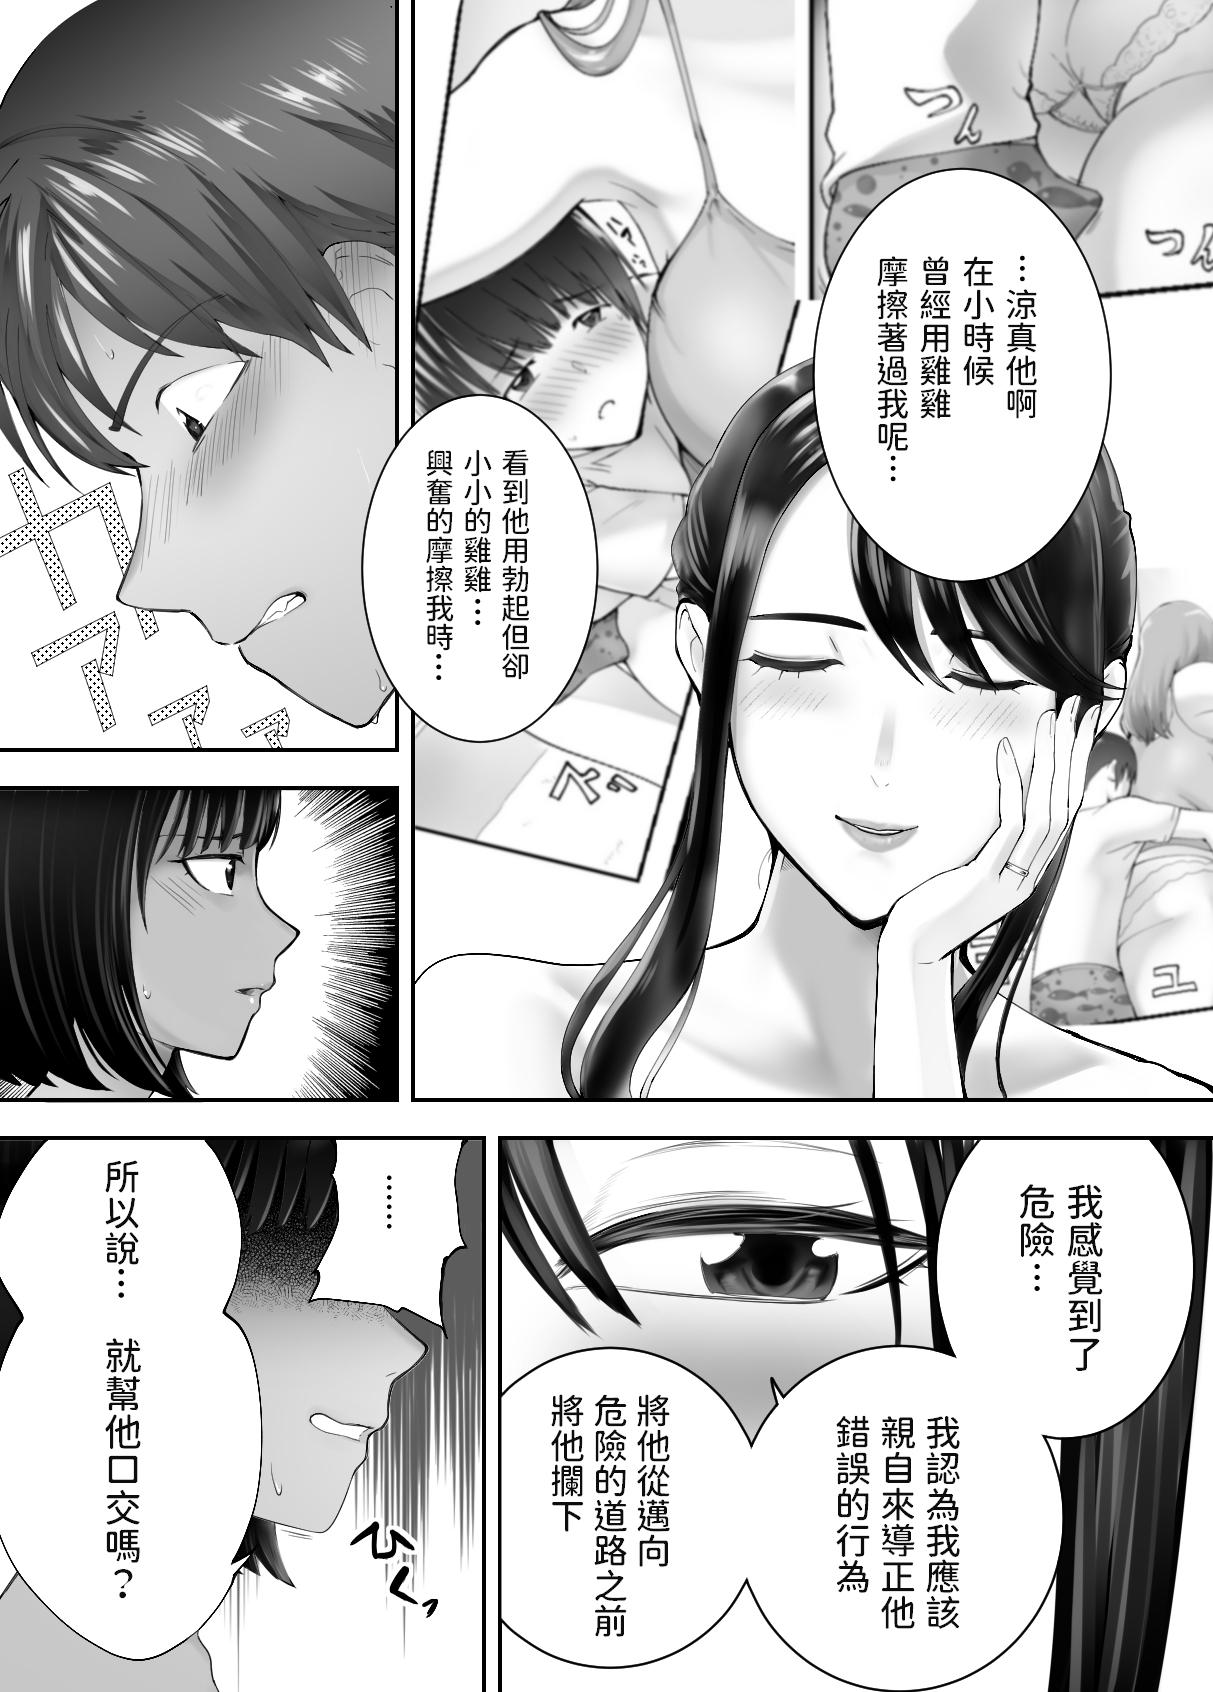 Orgasm Osananajimi ga Mama to Yatte imasu. 7 - Original Toy - Page 6